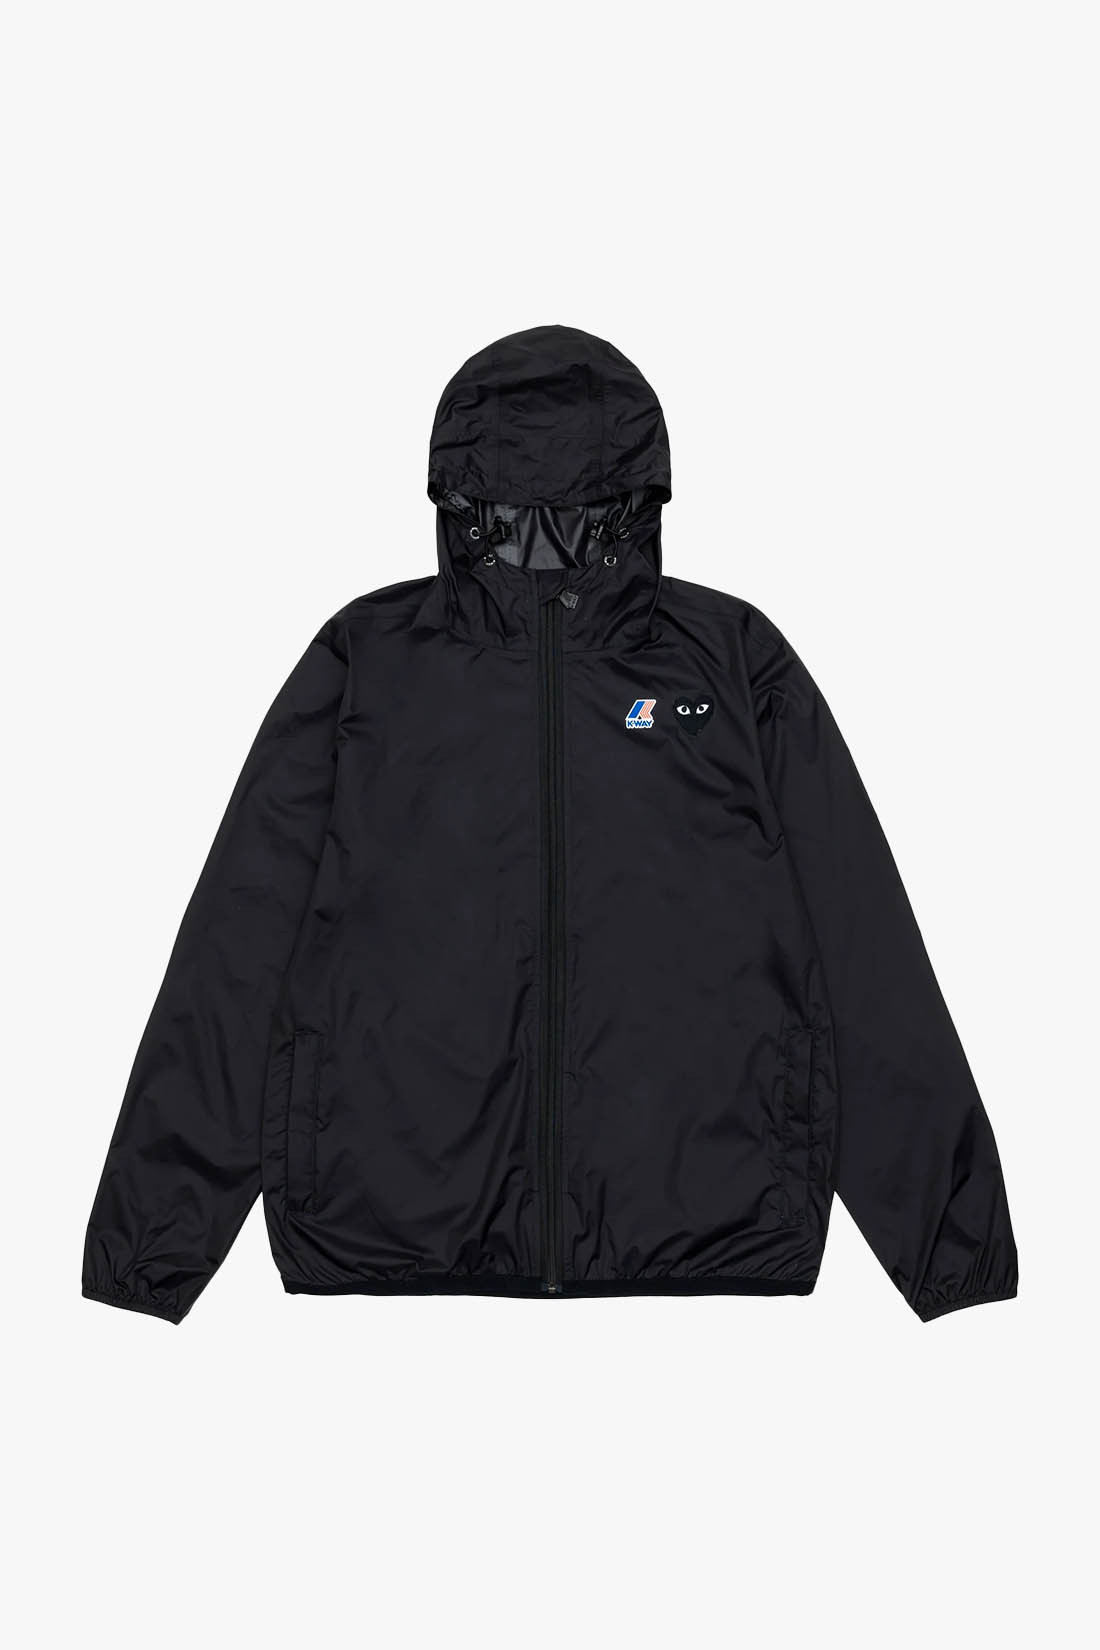 K-way hoodie zip black emblem Black